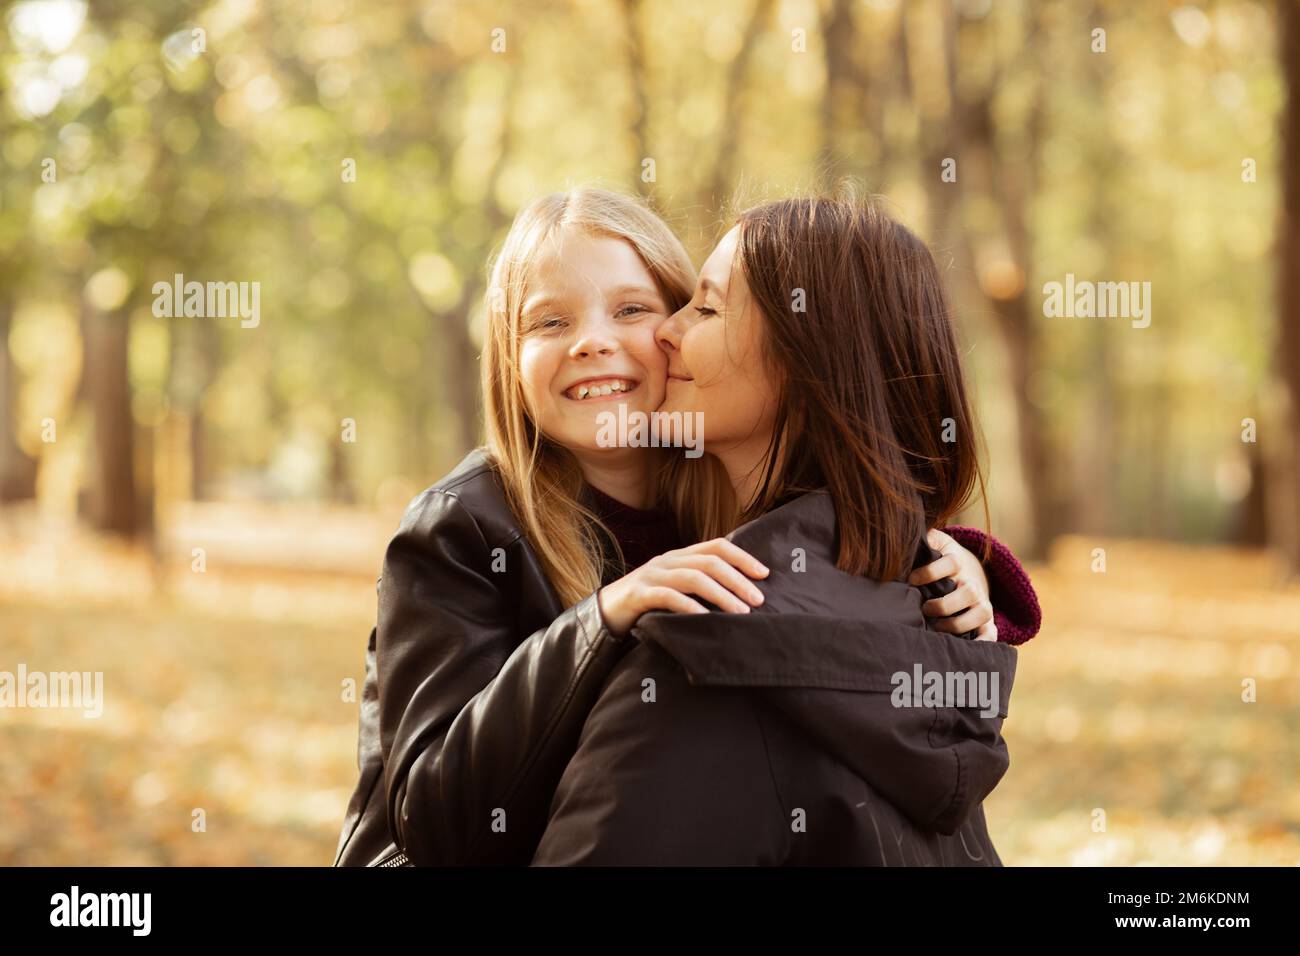 Ritratto di famiglia di giovane donna e ragazza adolescente che cammina nella foresta. Madre che tiene la figlia tra le braccia, baciando la guancia. Foto Stock